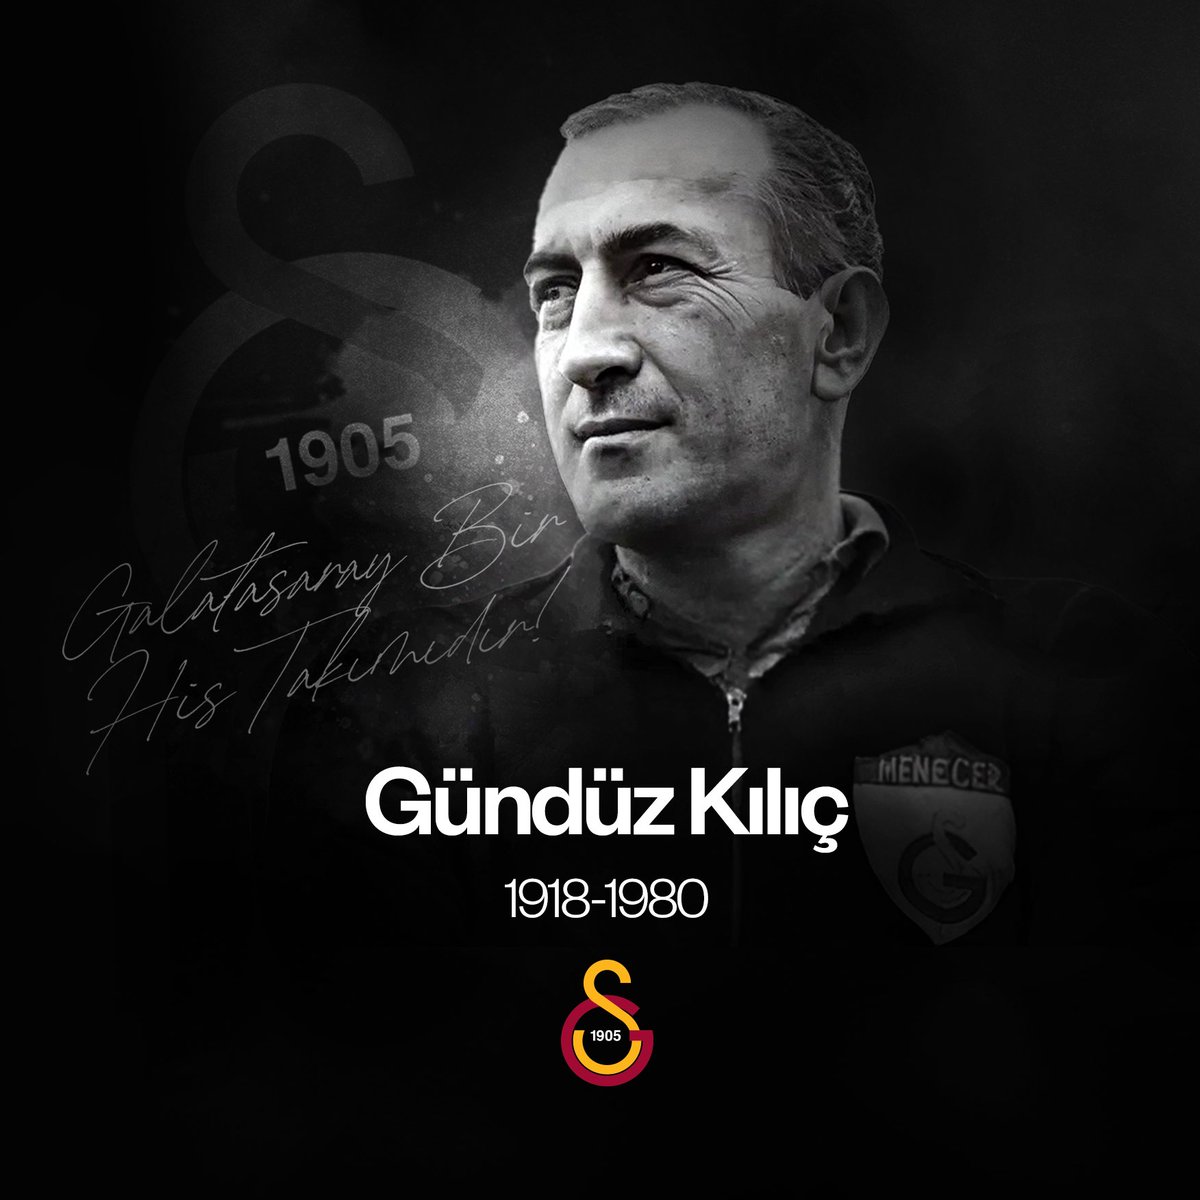 Şanlı tarihimizin büyük efsanelerinden, kulübümüzde hem futbolcu hem de teknik direktör olarak önemli başarılara imza atan ‘Baba’ Gündüz Kılıç’ı aramızdan ayrılışının 44. yılında sevgi, saygı ve rahmetle anıyoruz. #GalatasarayBirHisTakımıdır